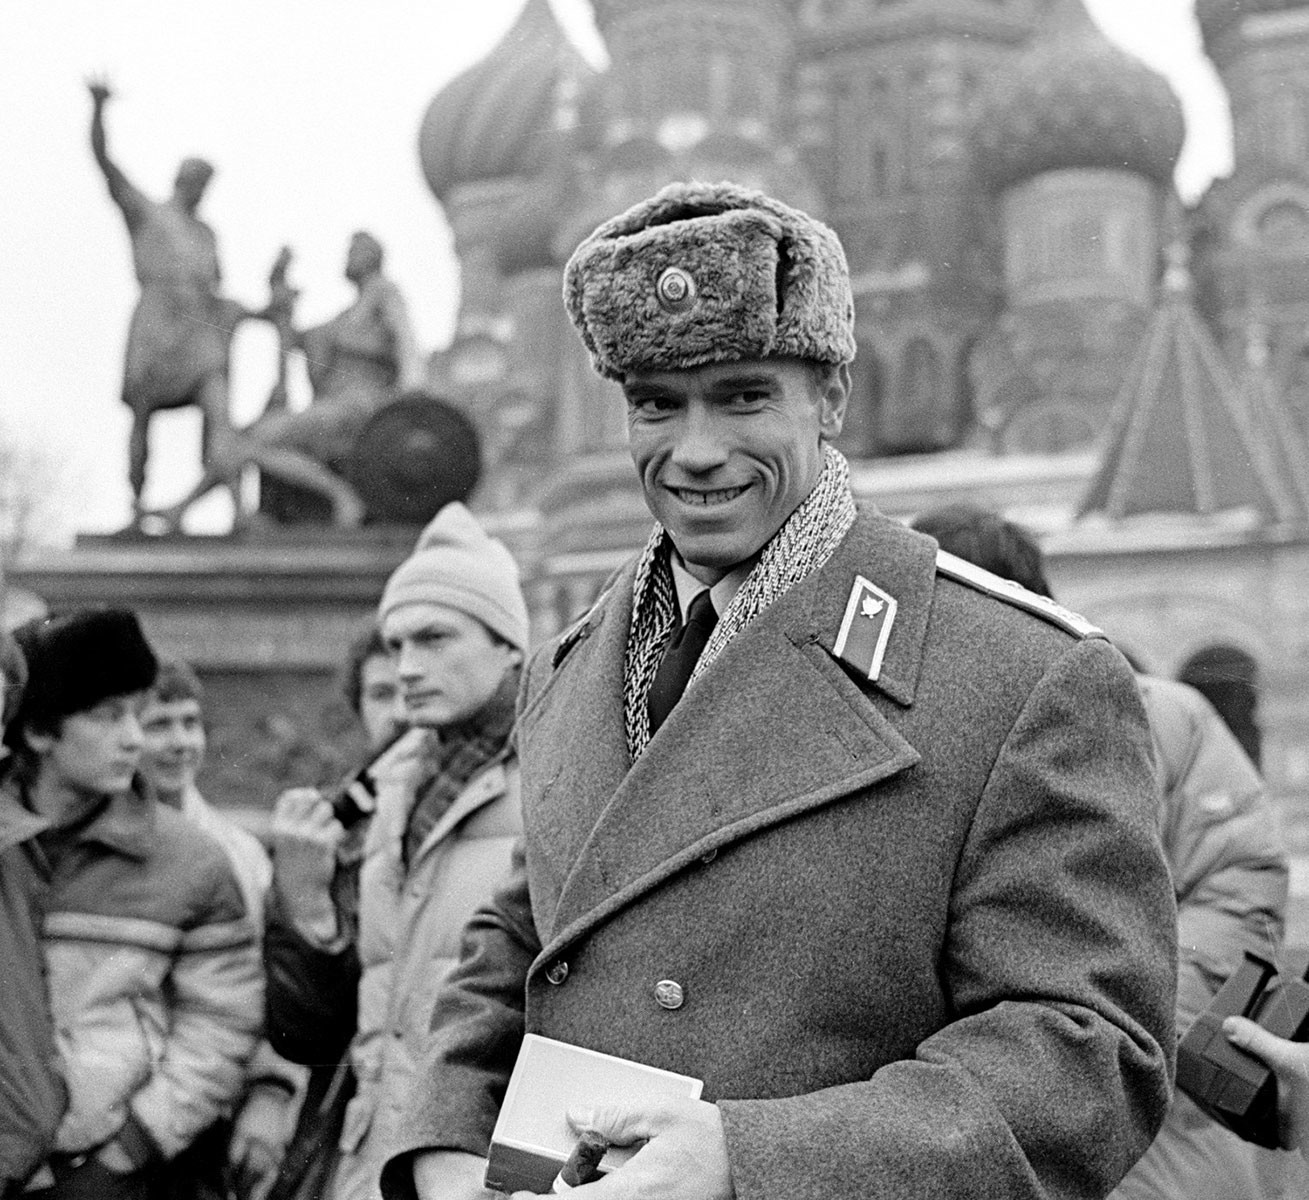 Pada 1988, Arnold Schwarzenegger mengenakan seragam polisi Soviet di Lapangan Merah selama syuting film “Red Heat” di sana.